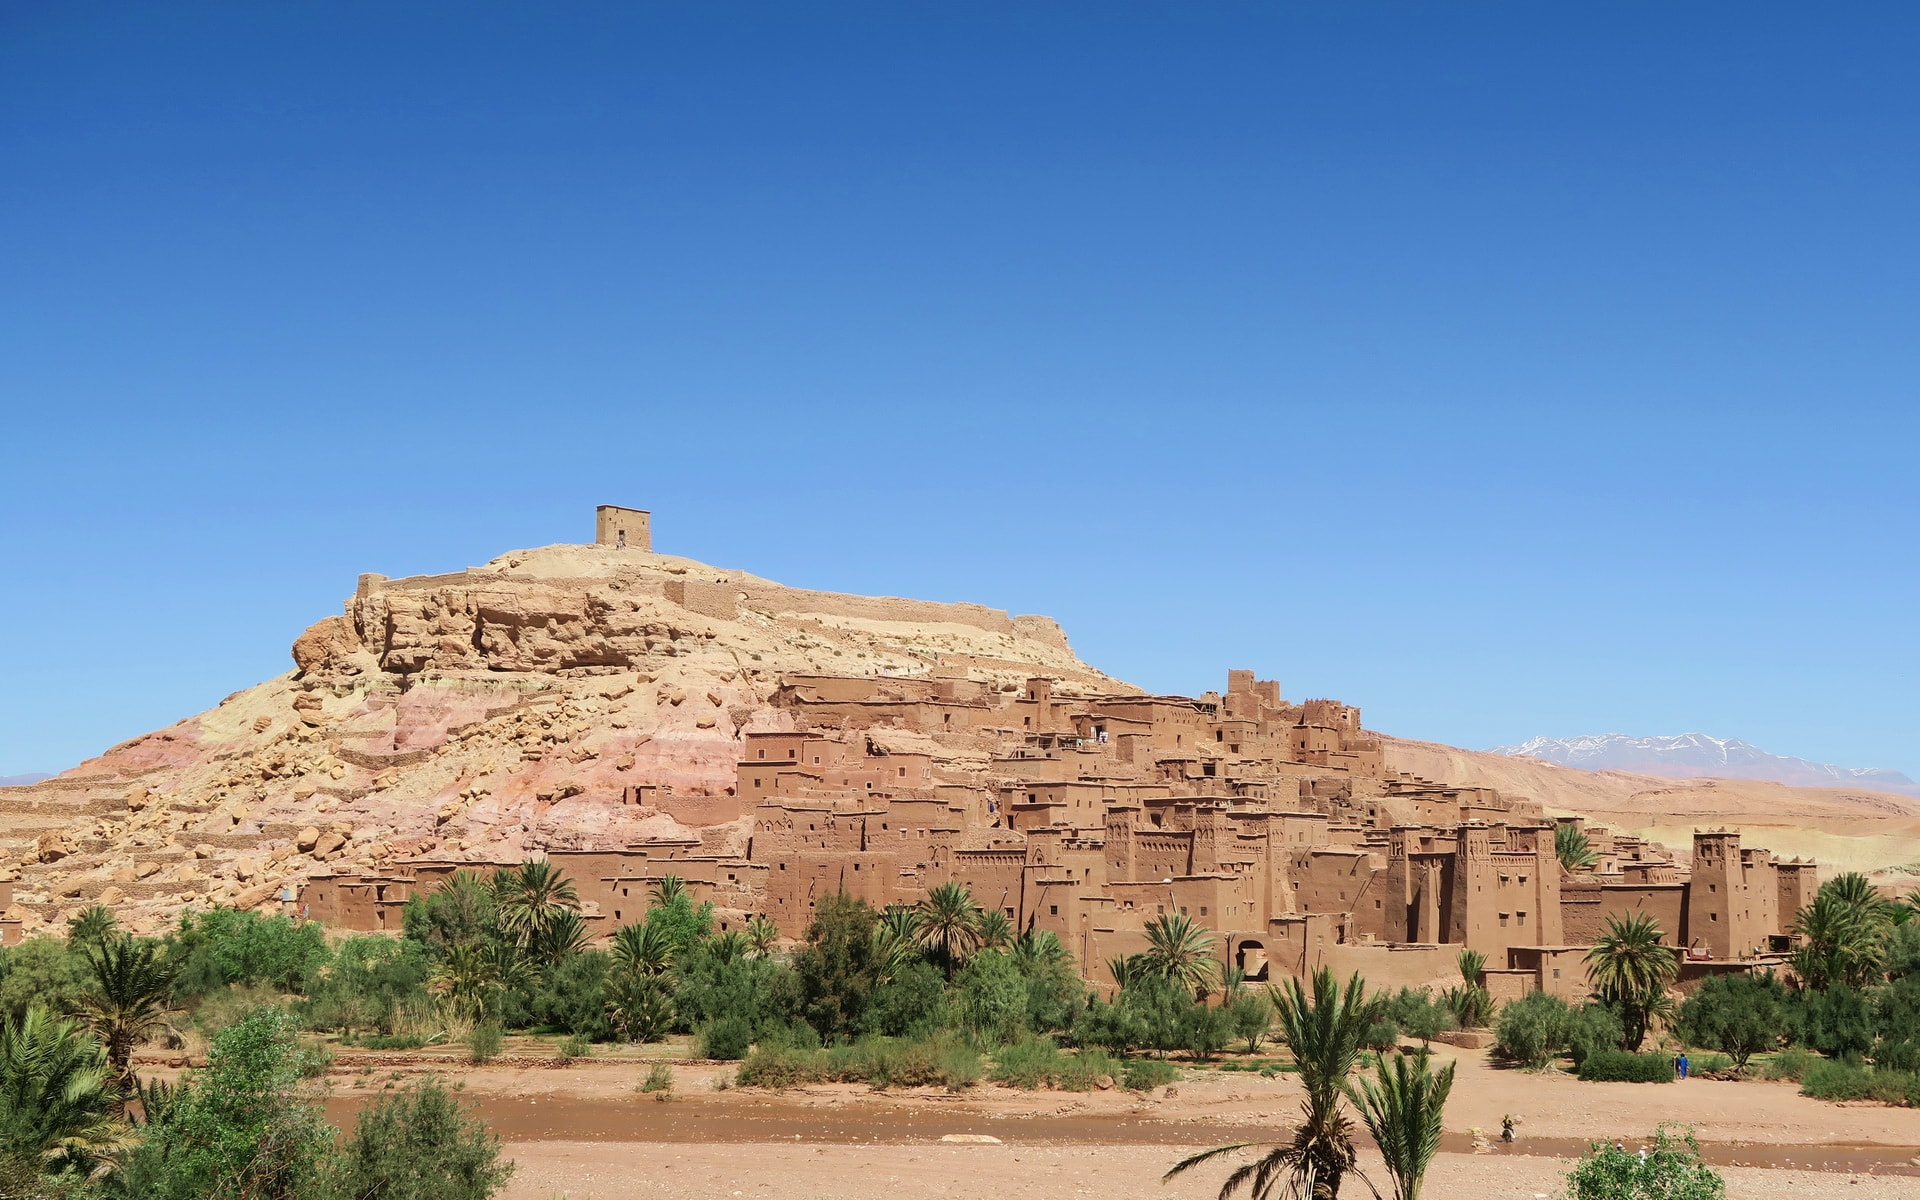 Active Treks Morocco - Marrakech to Fes tour